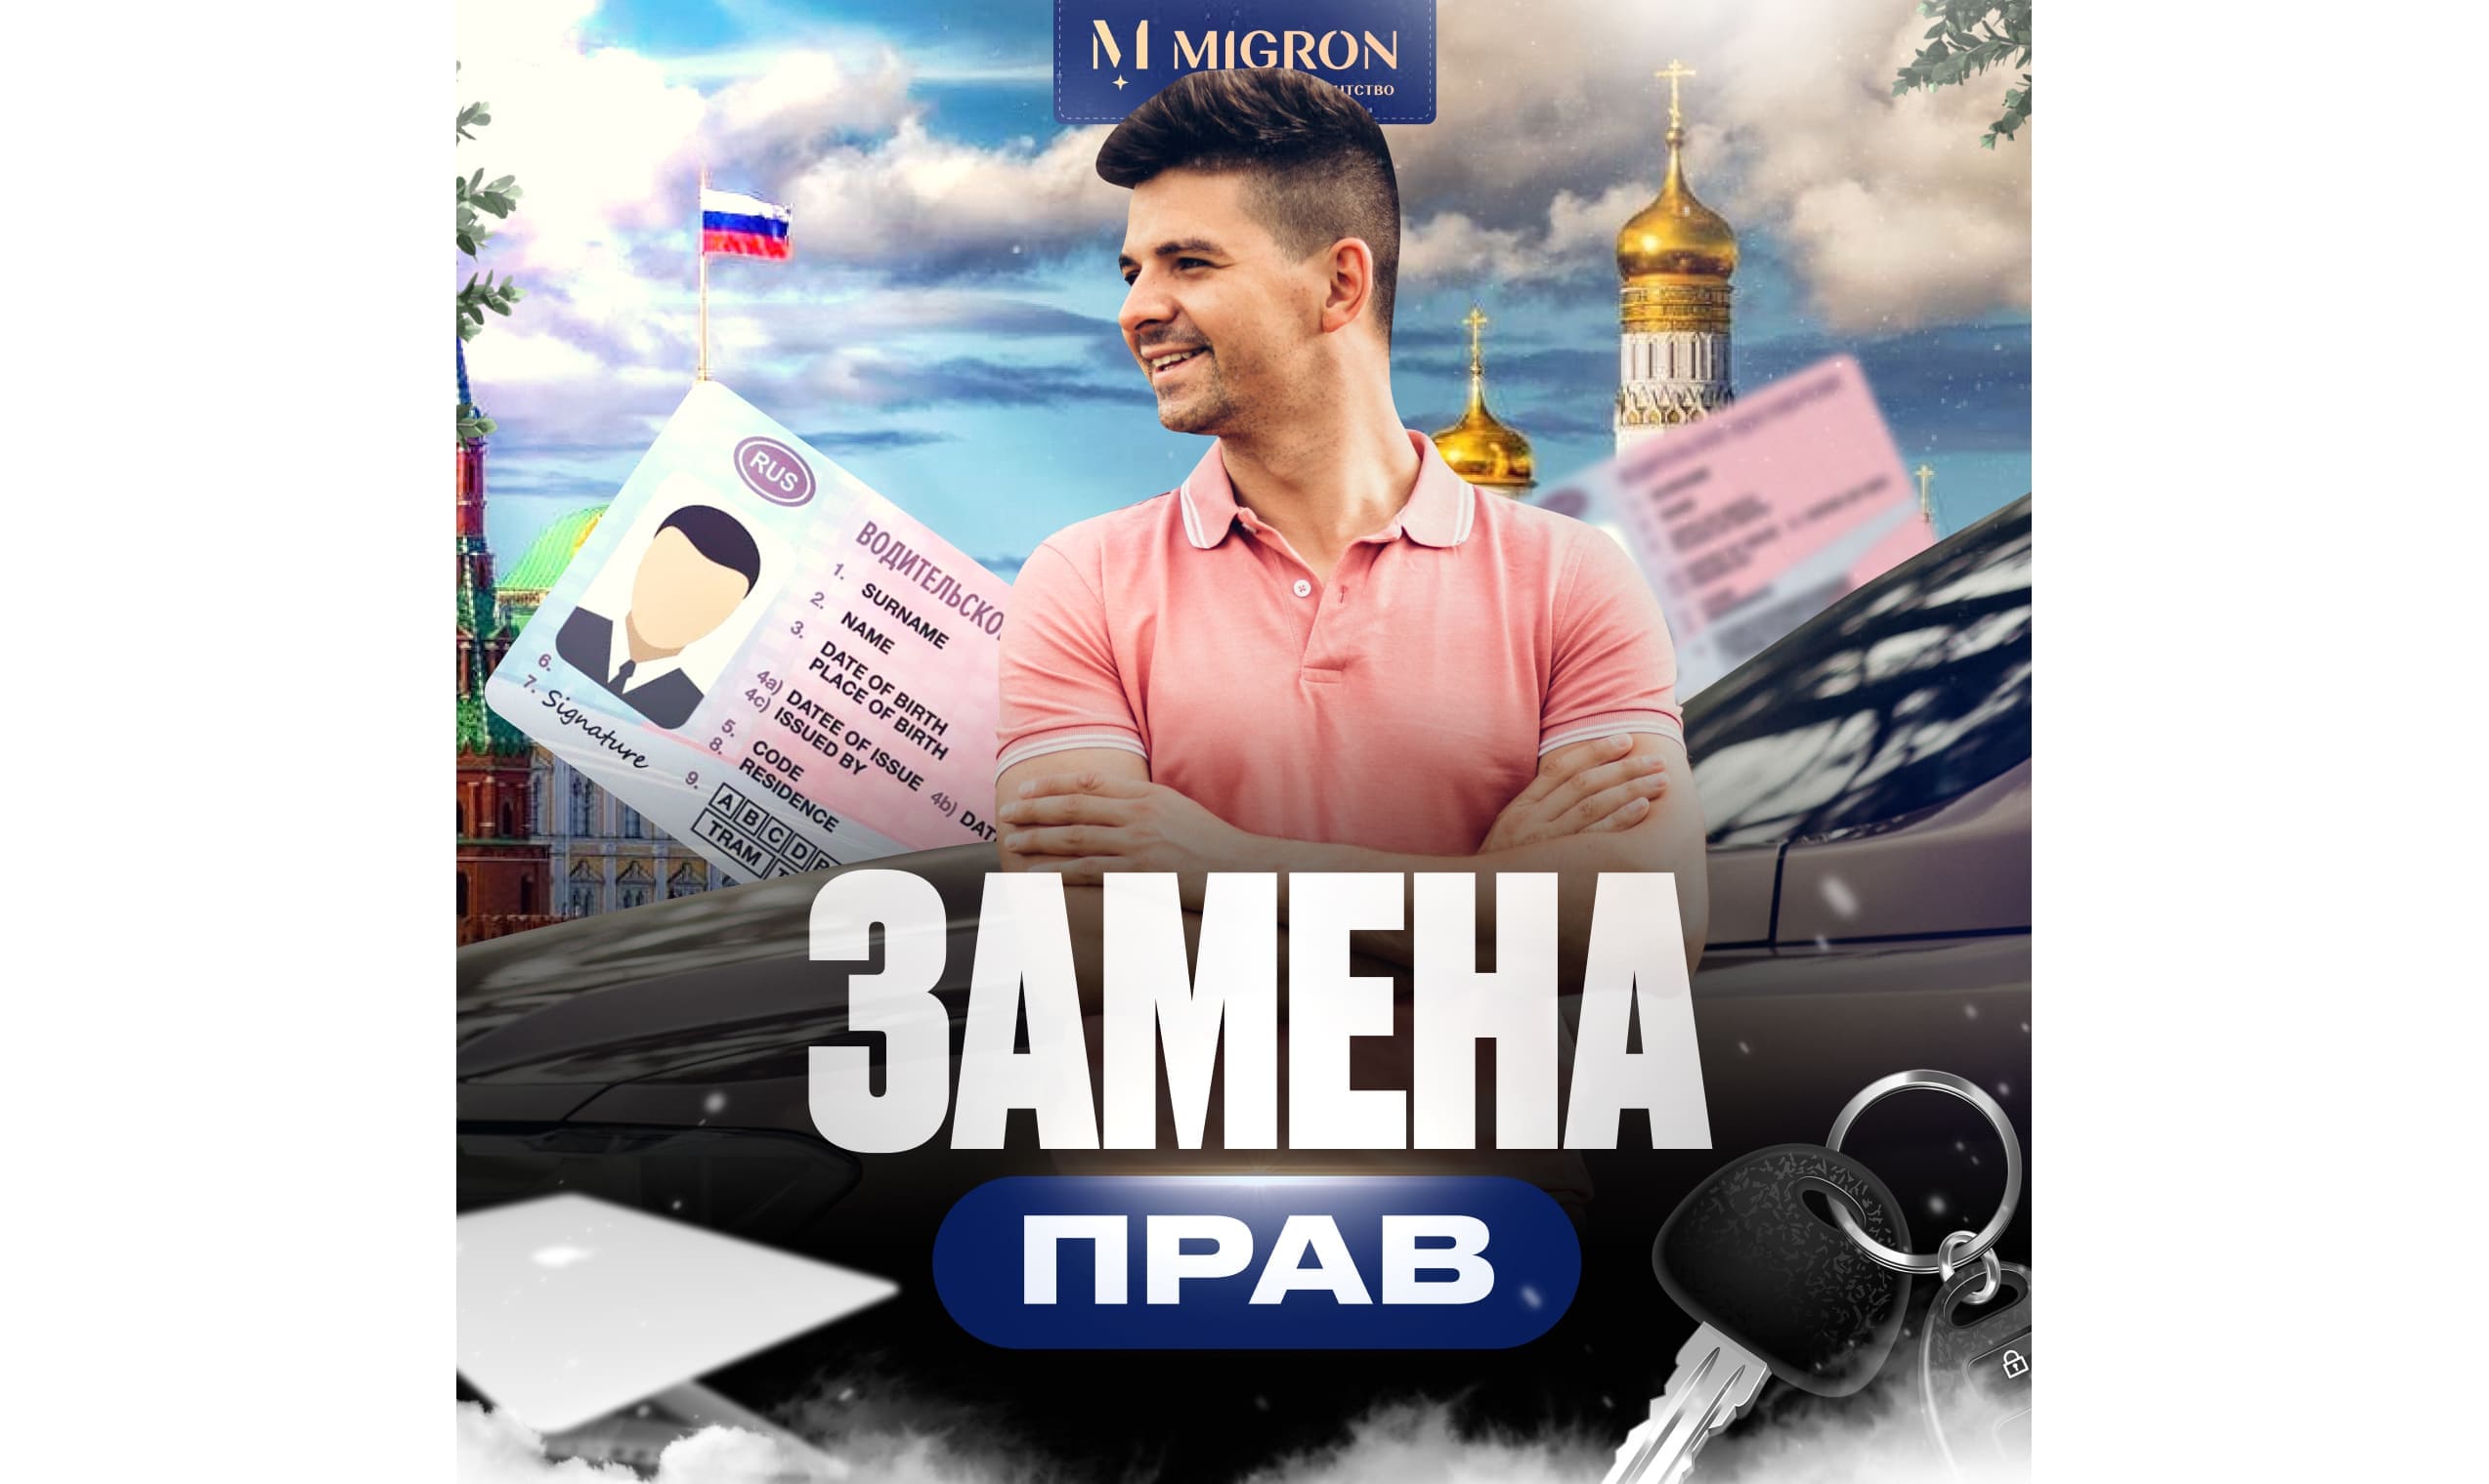 Водительское удостоверение для иностранных граждан в РФ